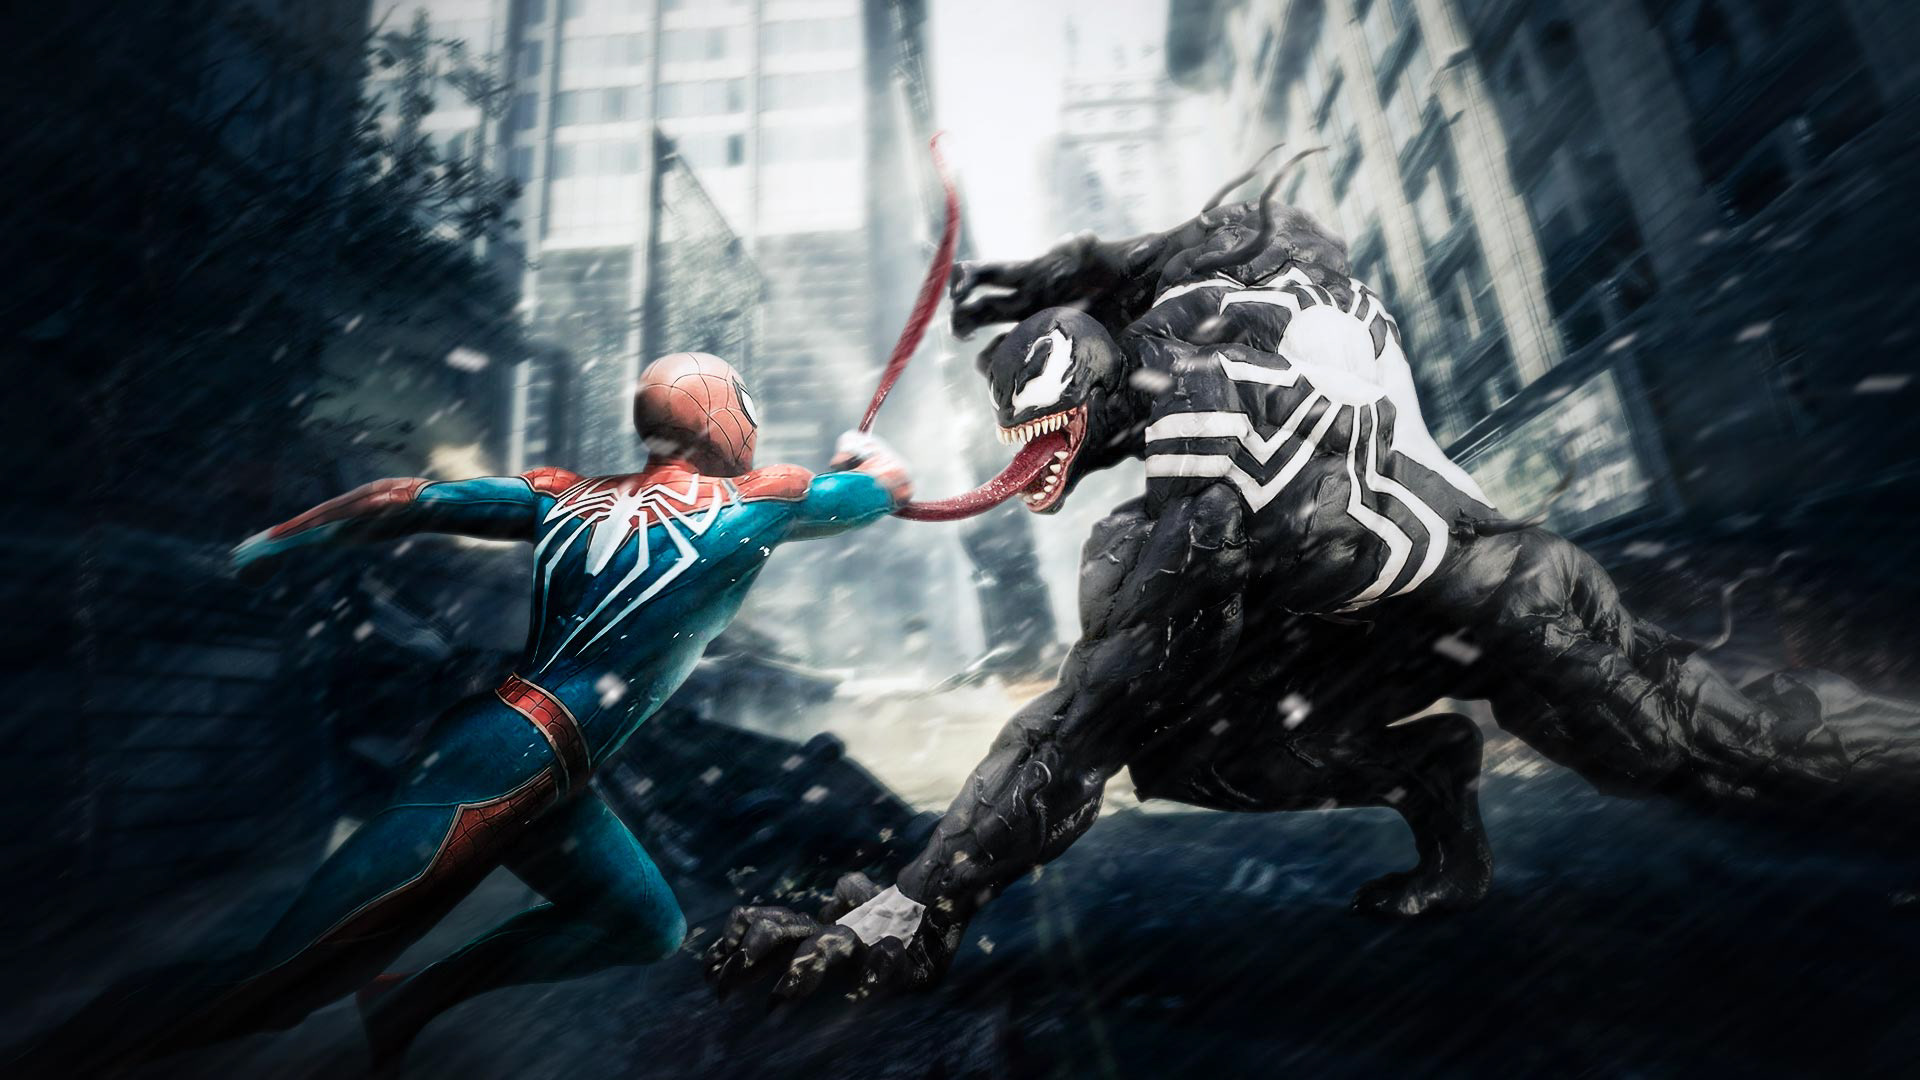 Venom Vs Spiderman Hd Hd Superheroes 4k Wallpapers Images.